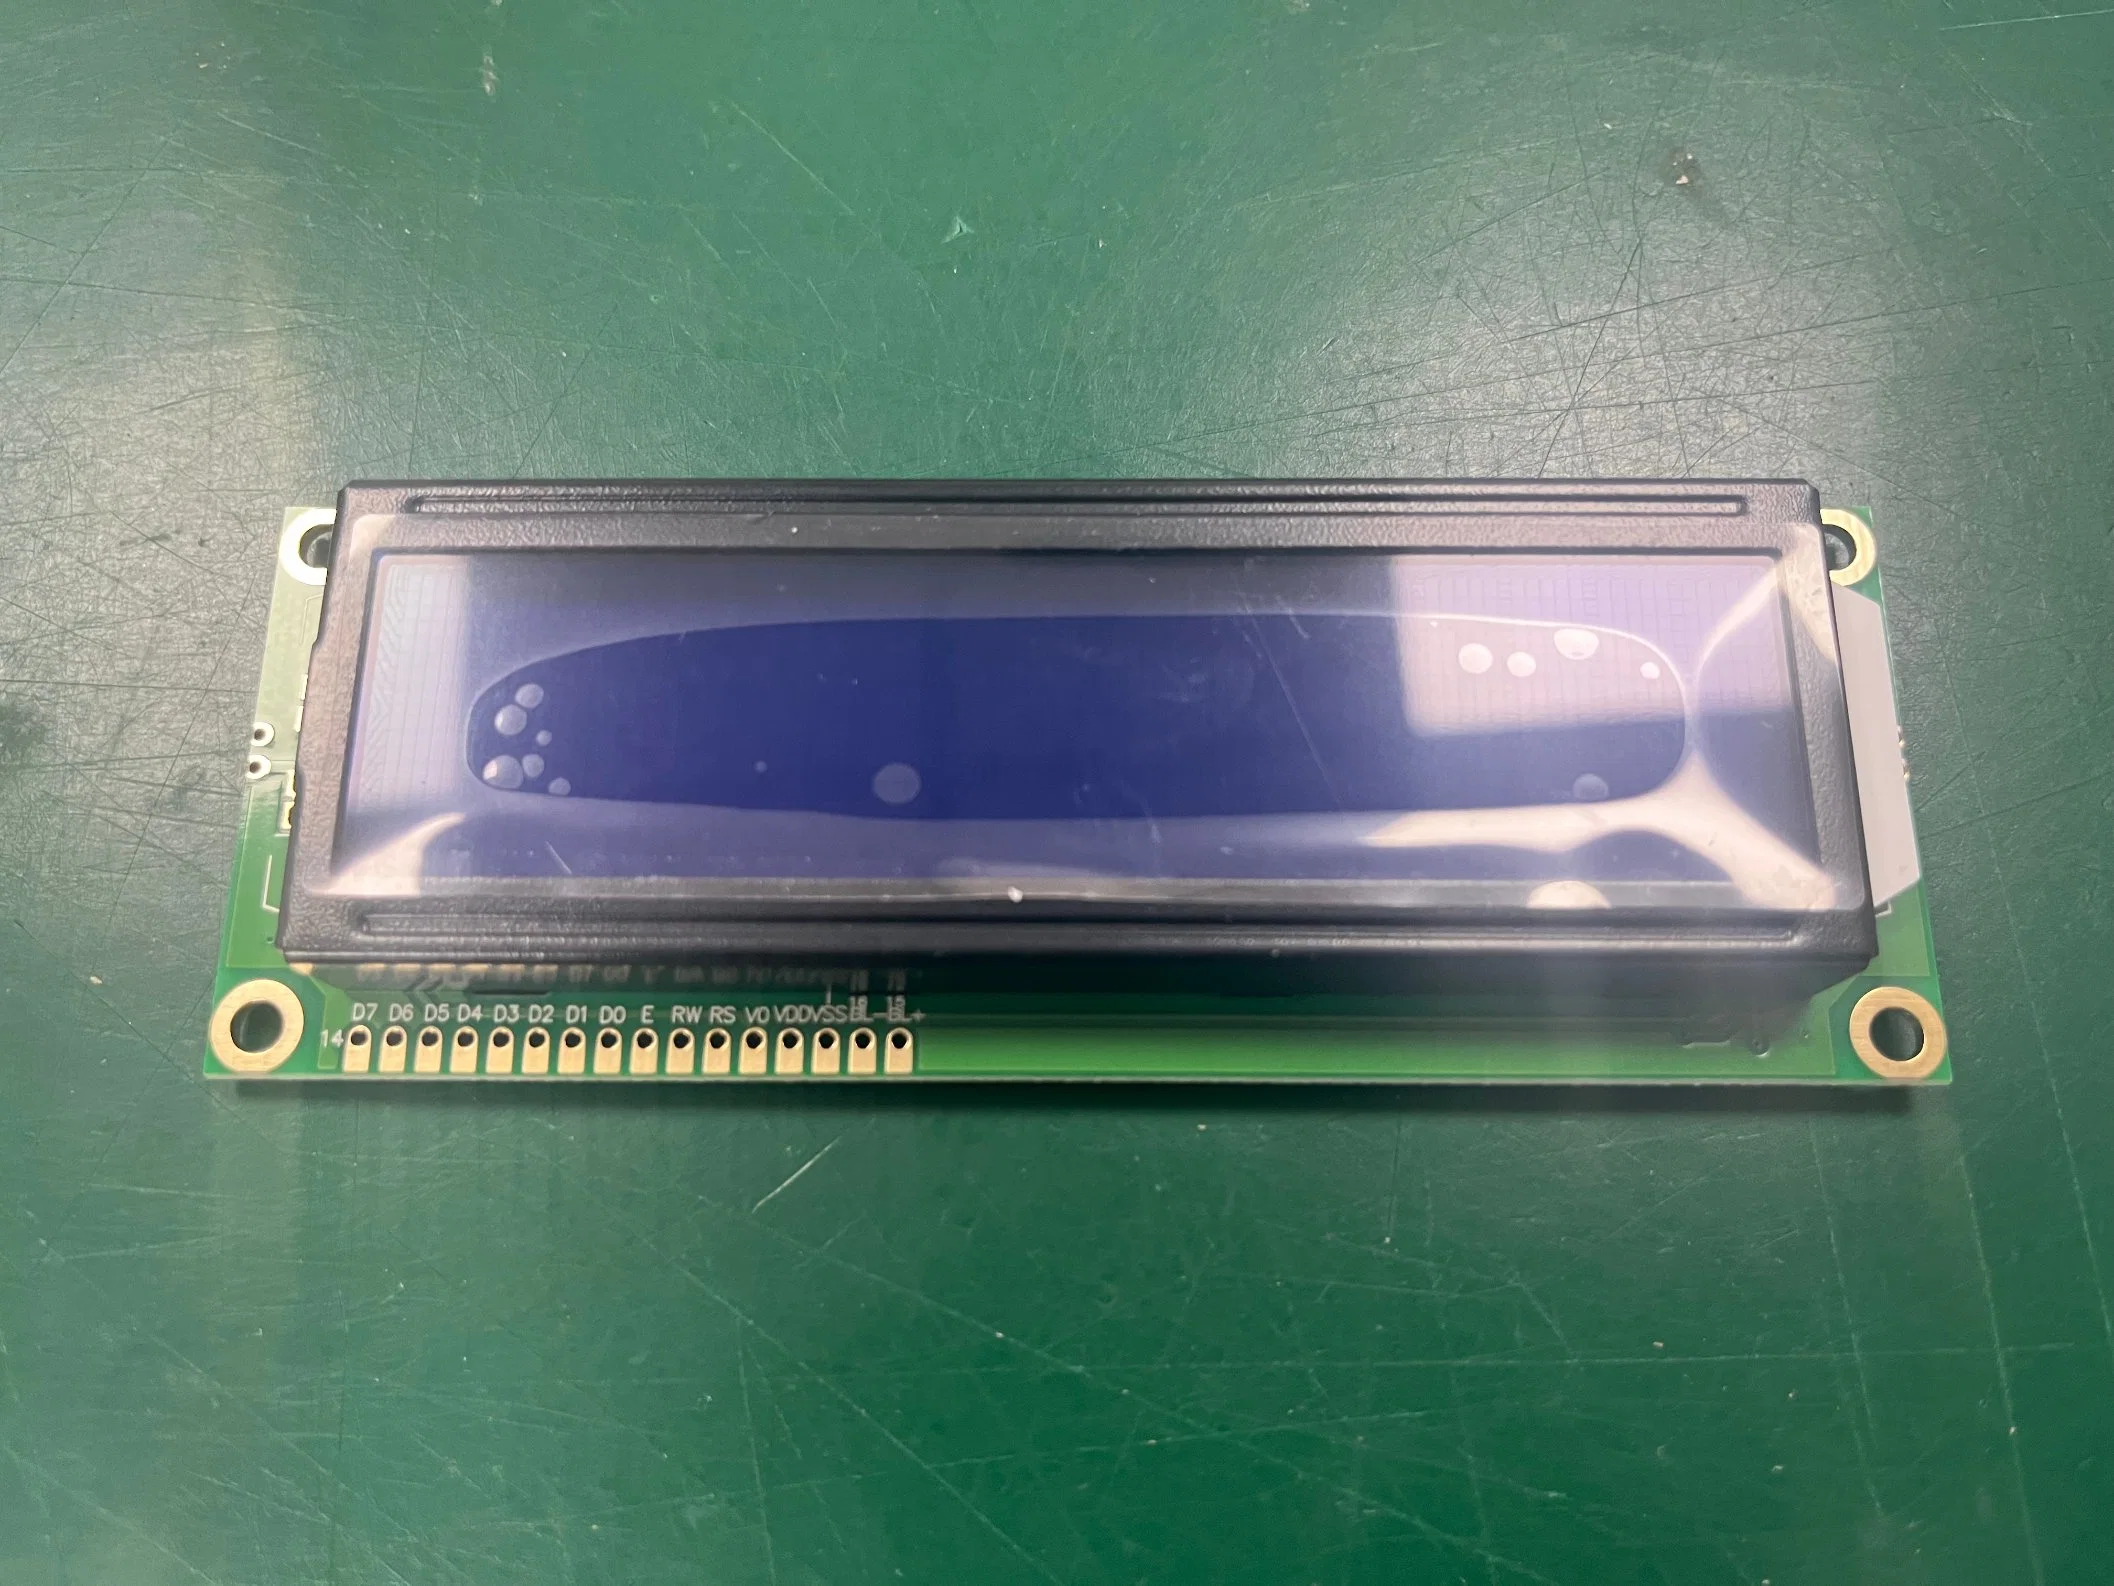 شاشة عرض LCD زرقاء مترانة16X2 من نوع Stn أحادية اللون 1602b أحادية اللون